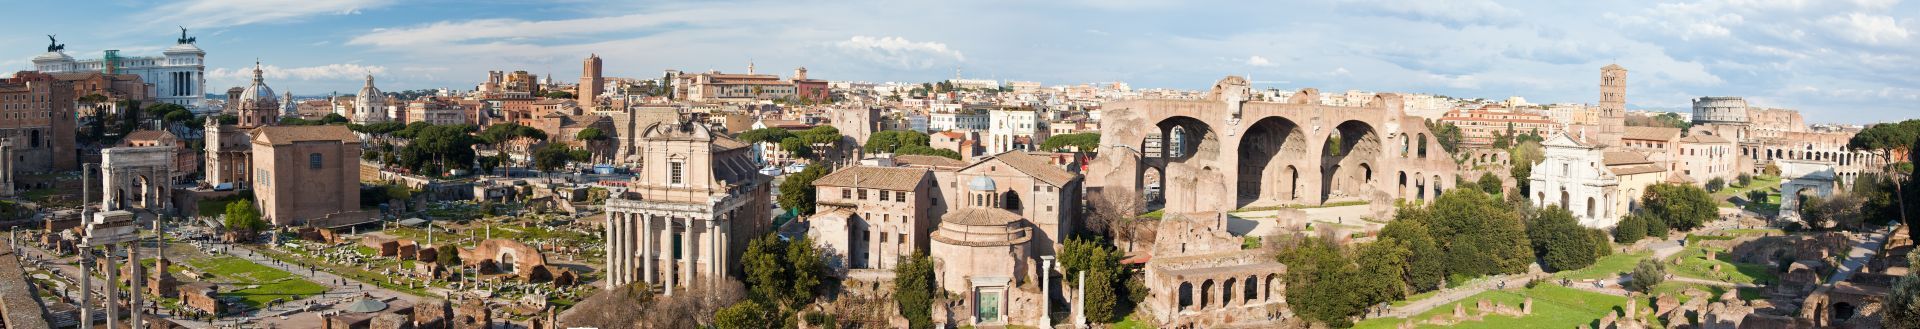 panoramica foro romano de roma